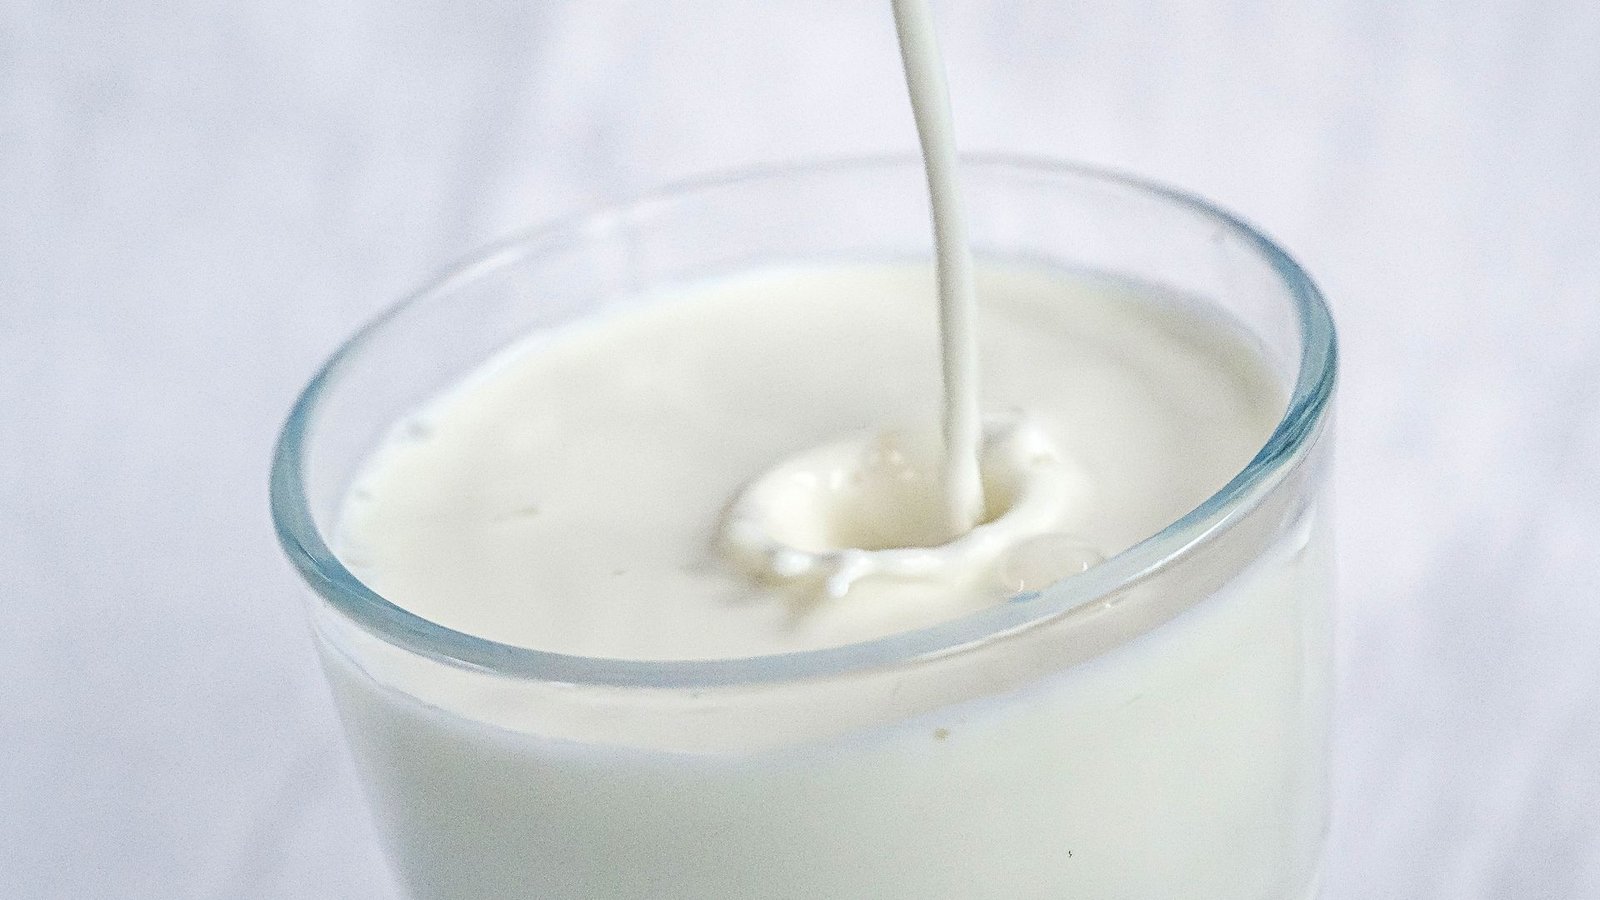 In den USA sollte derzeit lediglich pasteurisierte Milch konsumiert werden.Foto: Sina Schuldt/dpa